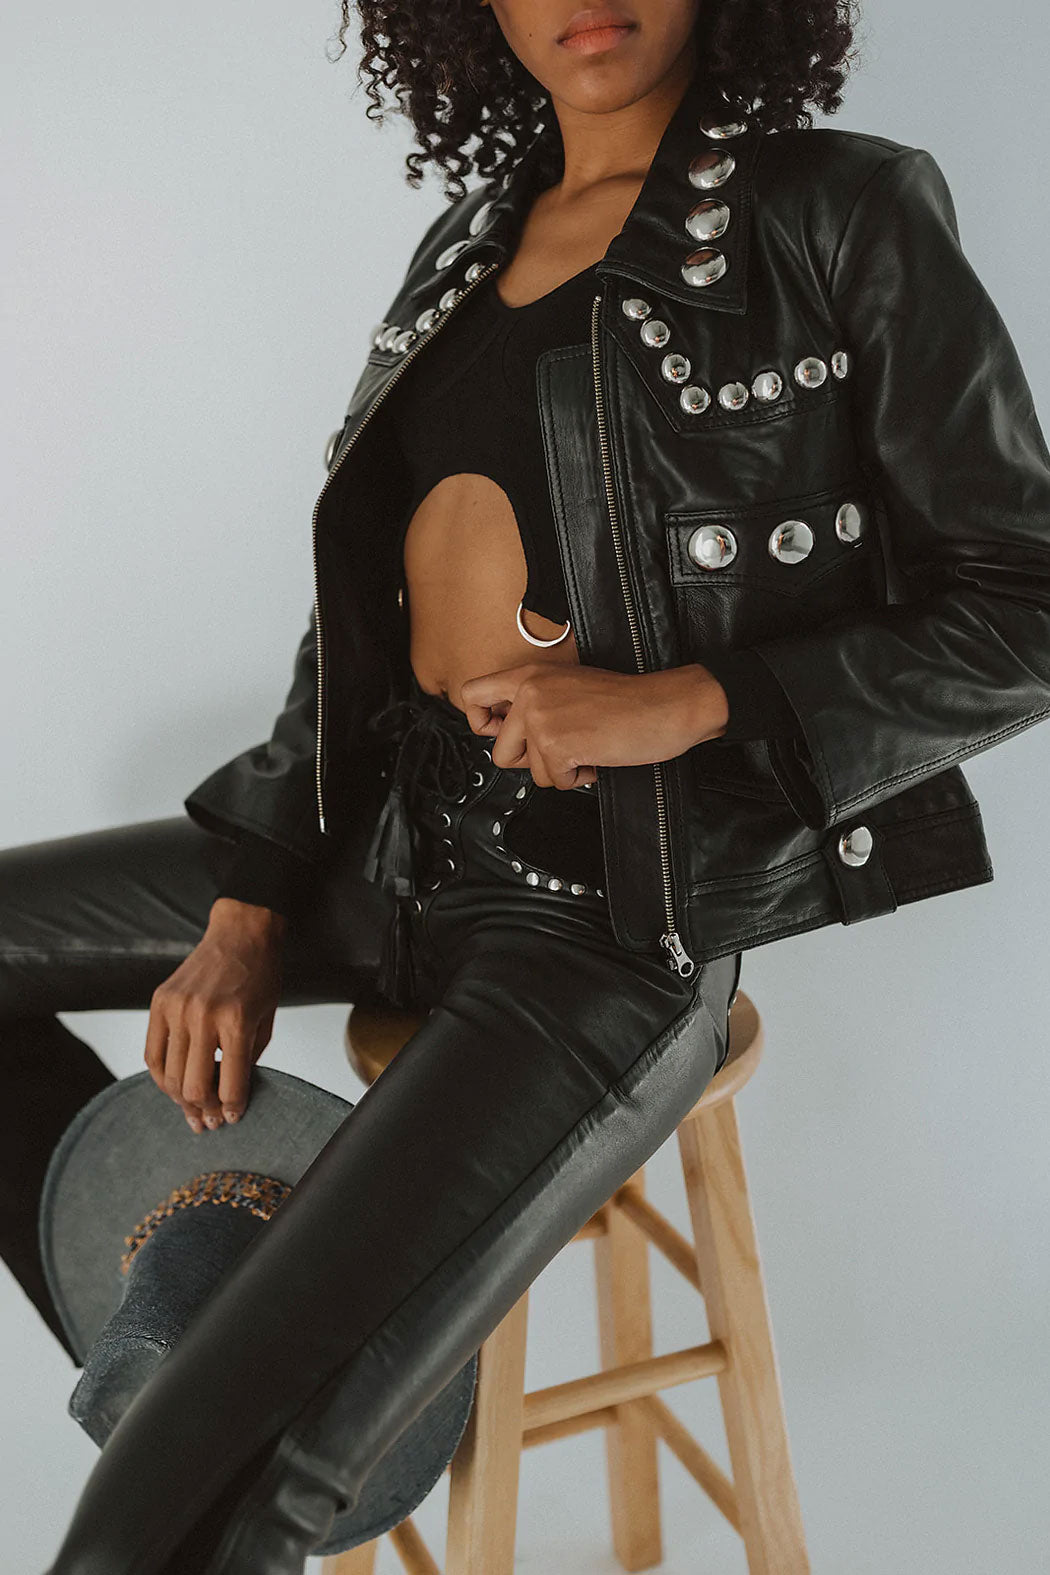 Women Best Black Punk Silver Spiked Studded Lambskin Leather Biker Jacket